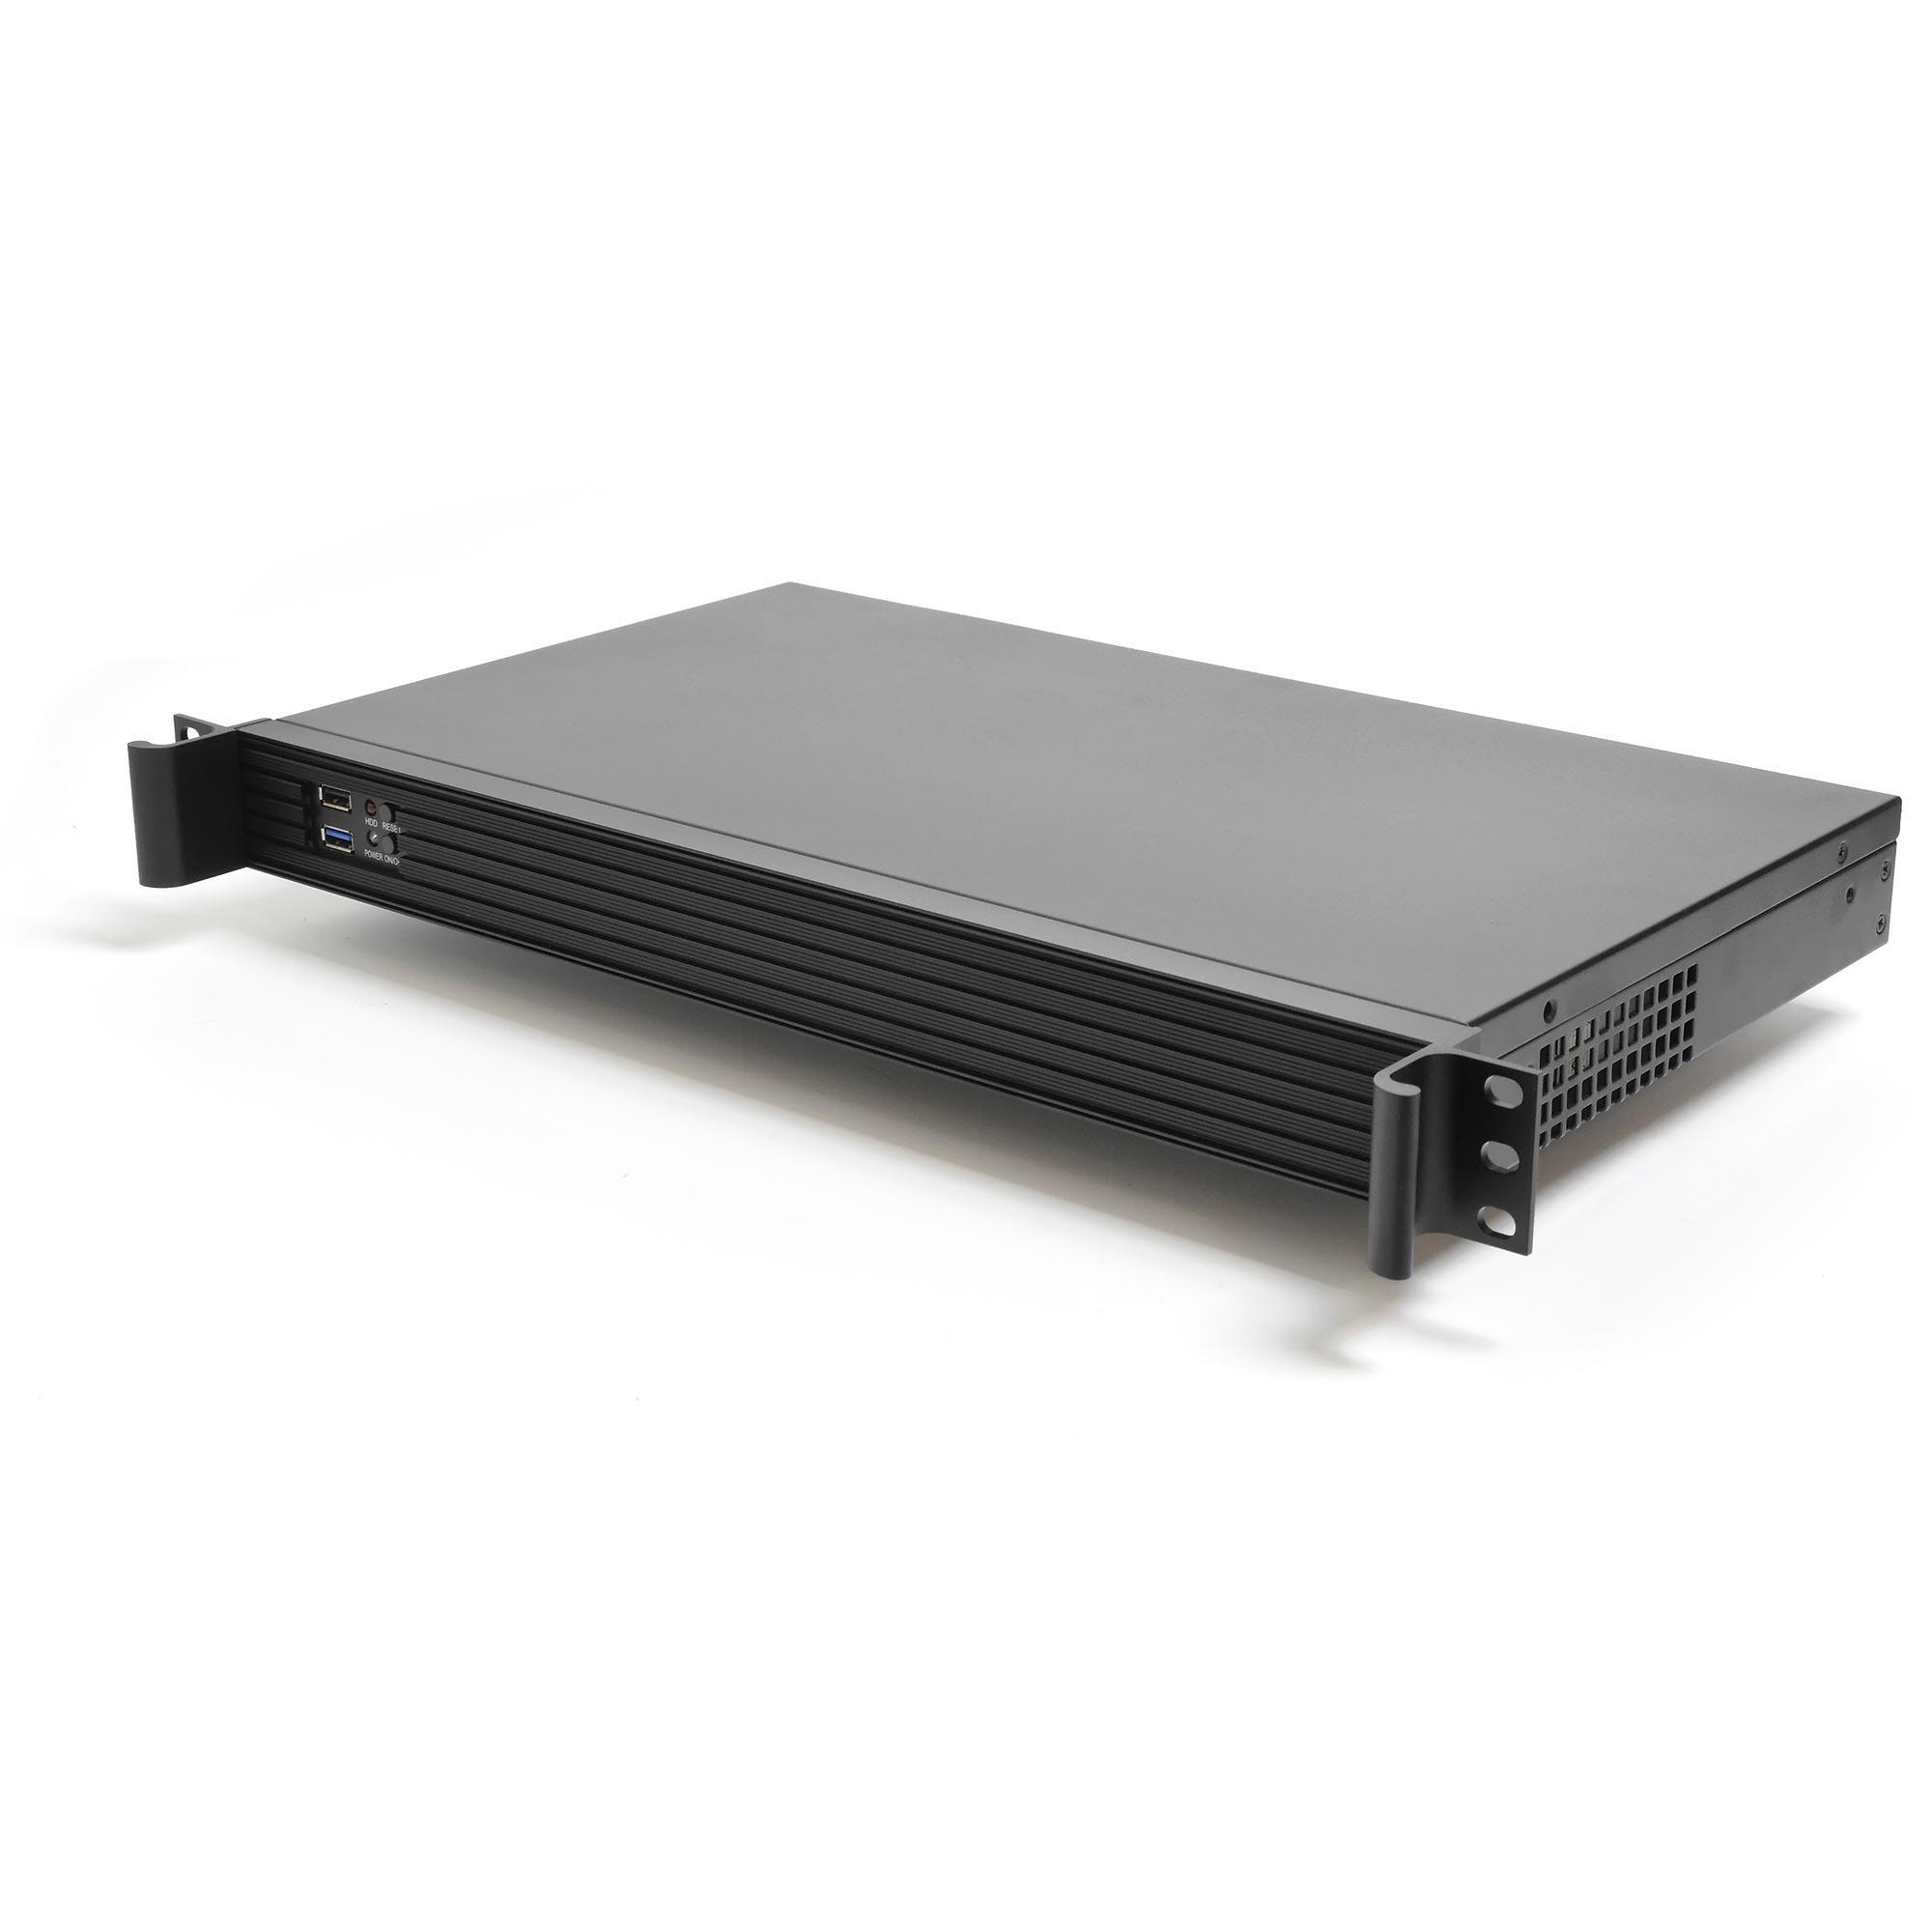 Серверный корпус 1U NR-N125 300Вт (MiniITX, 1x3.5int or 2x2.5int, 250mm) черный, NegoRack